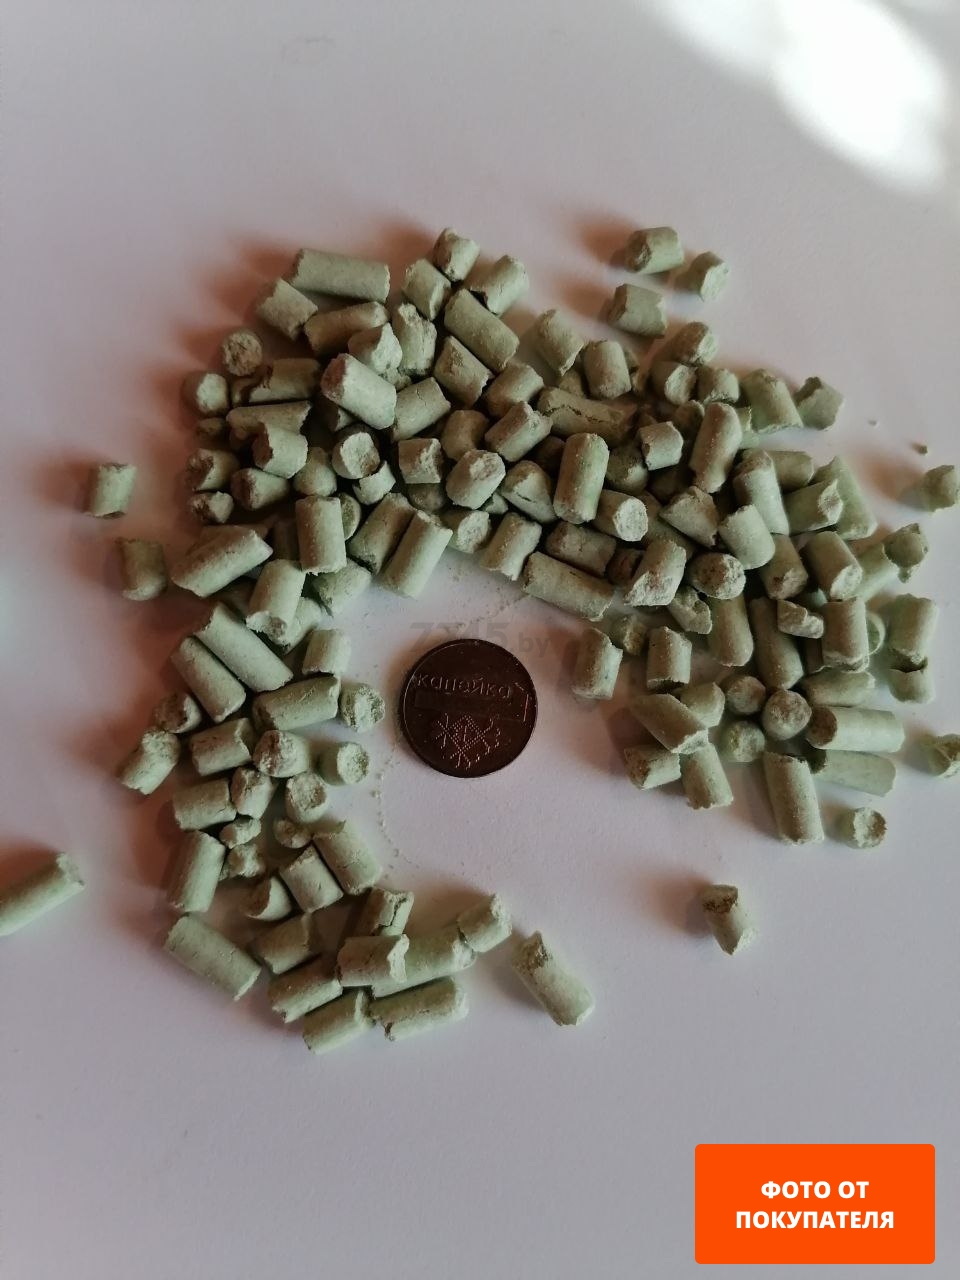 Наполнитель для туалета растительный комкующийся БАРСИК Tofu зеленый чай 30 л, 16,1 кг (92089)